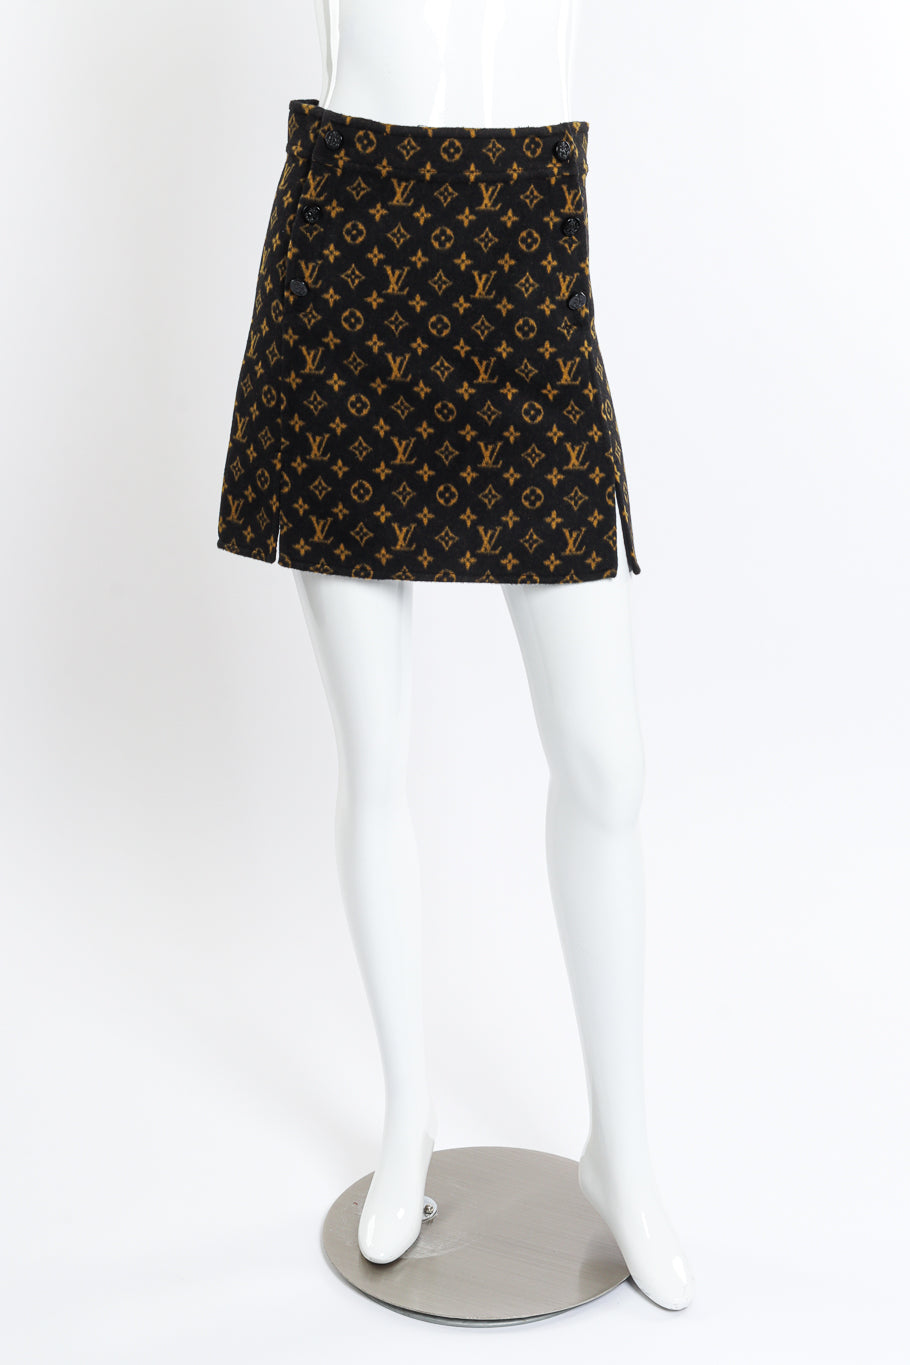 Louis Vuitton Monogram Slit Skirt front on mannequin @recess la